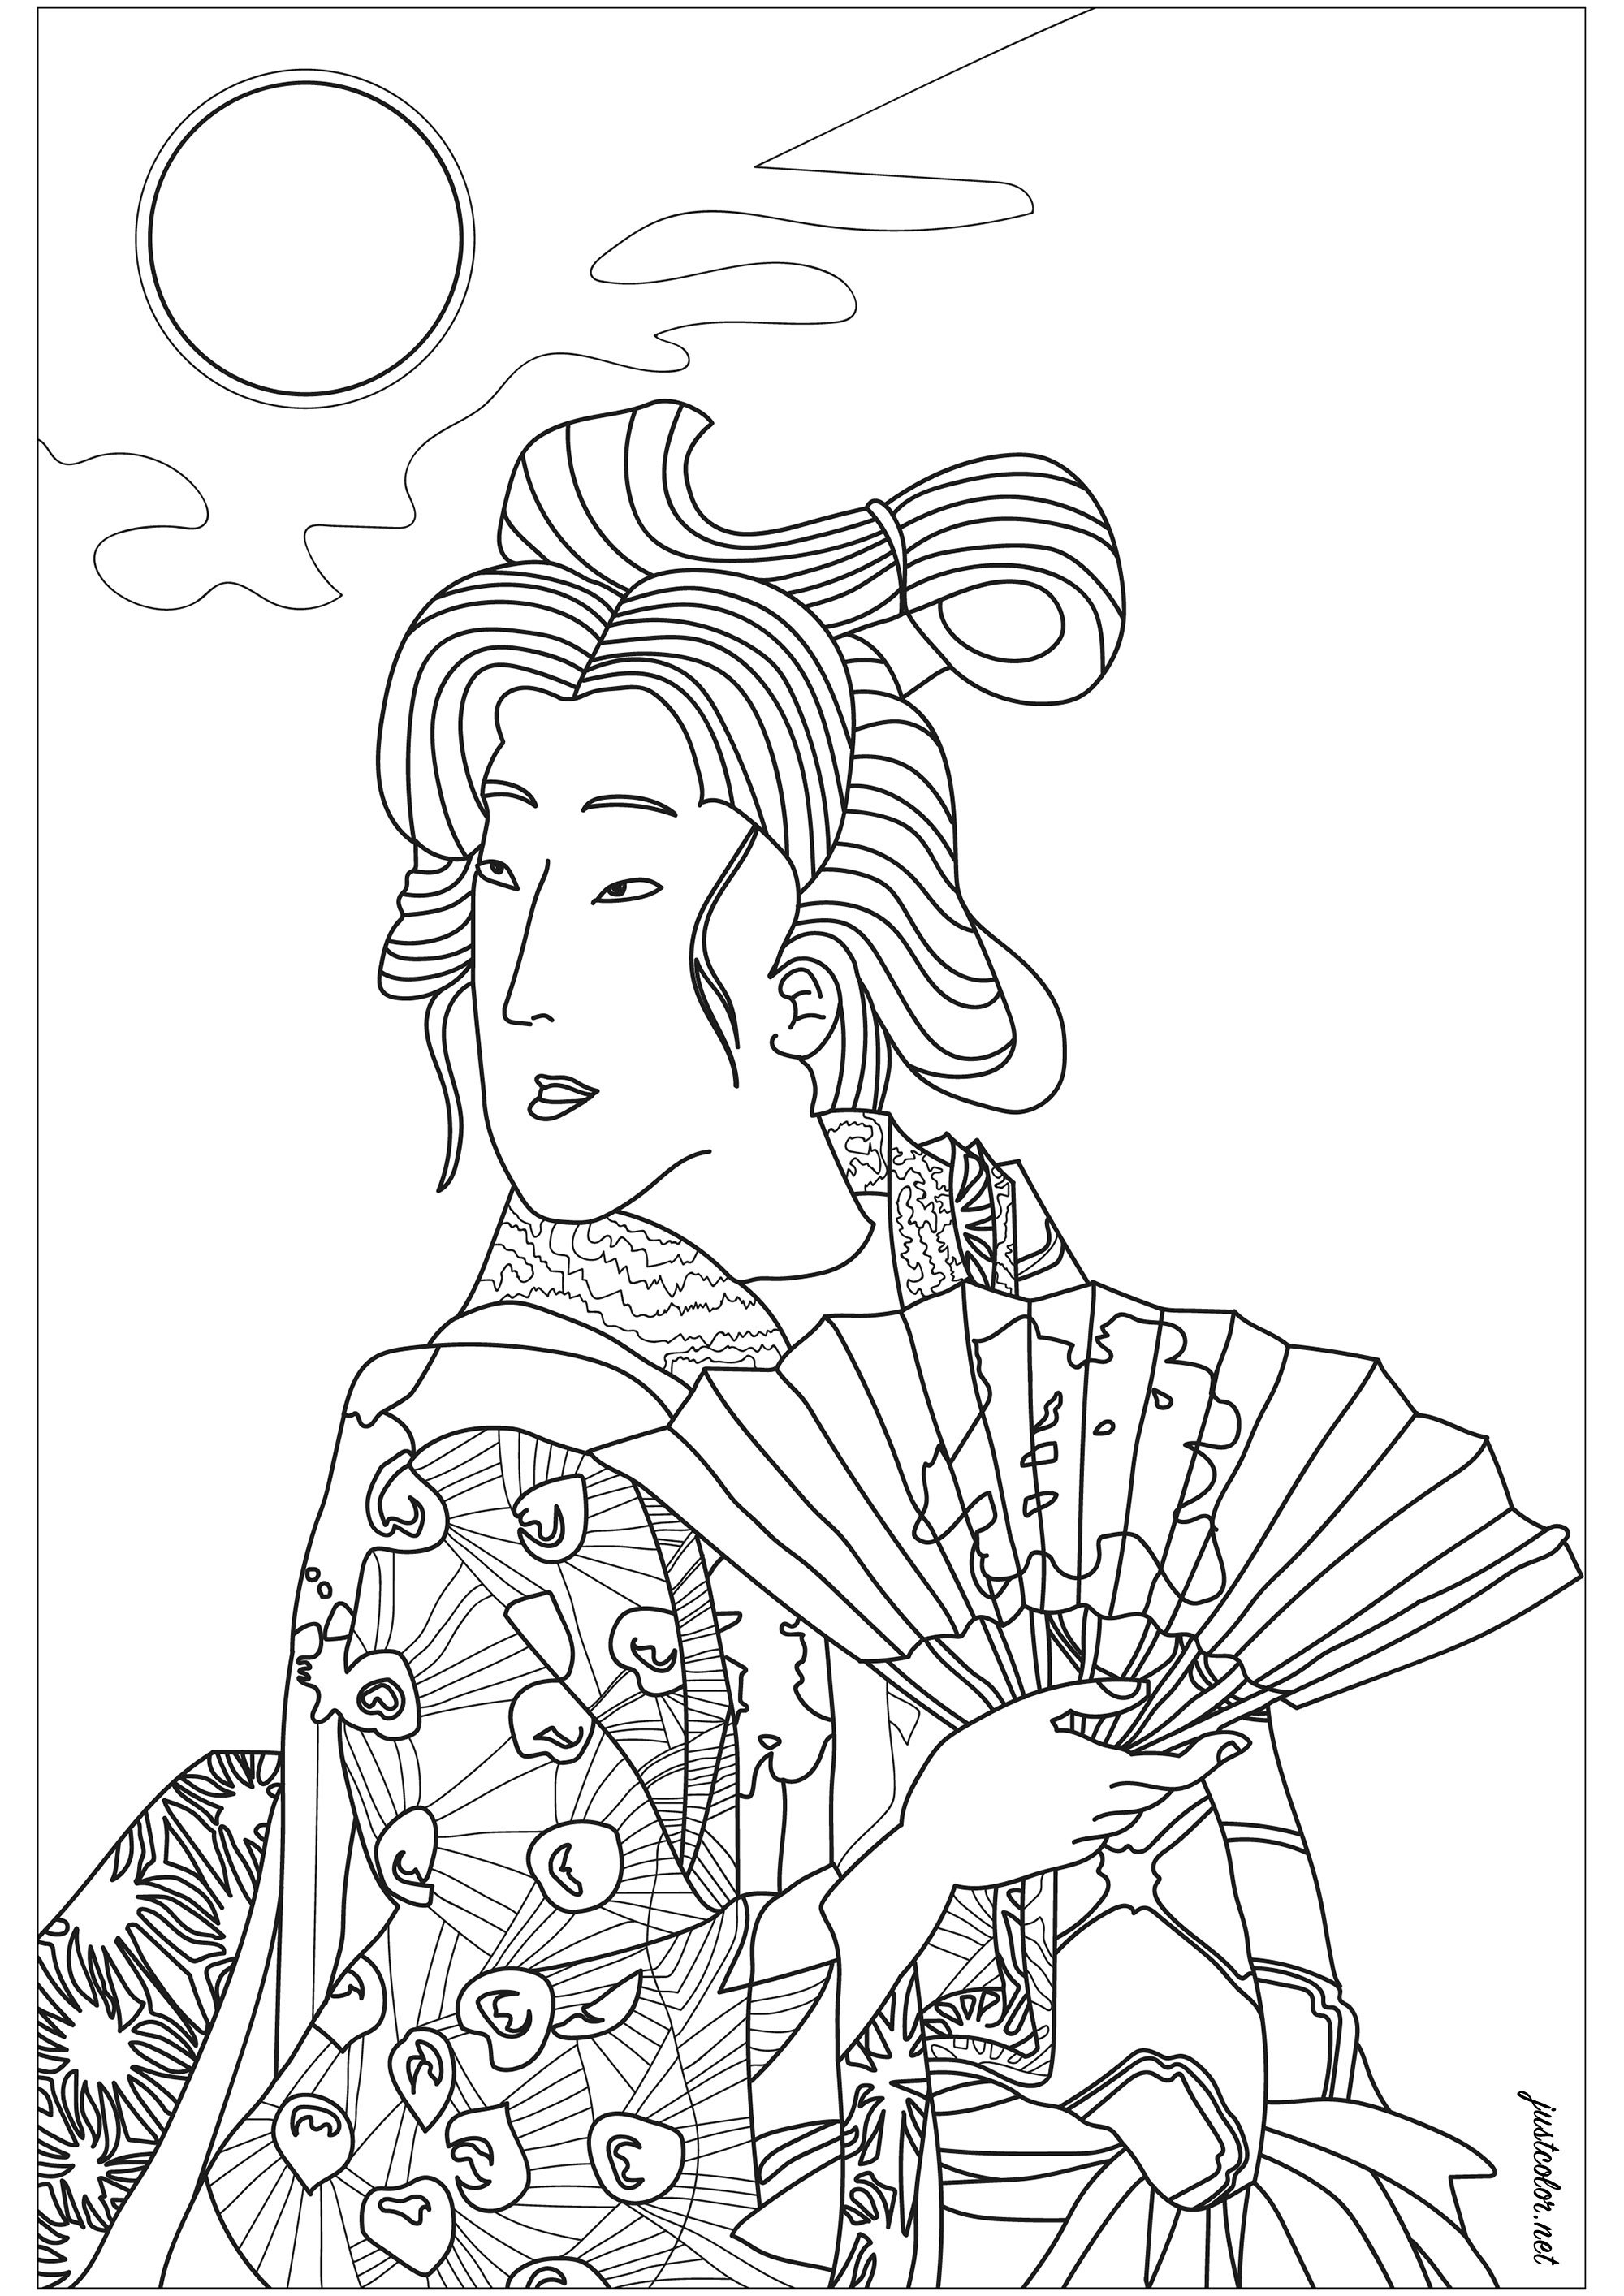 Geisha con abanico. Retrato de una geisha de un grabado japonés del siglo XIX de Yoshitoshi que representa a una mujer en kimono sujetando su abanico bajo la luna llena.